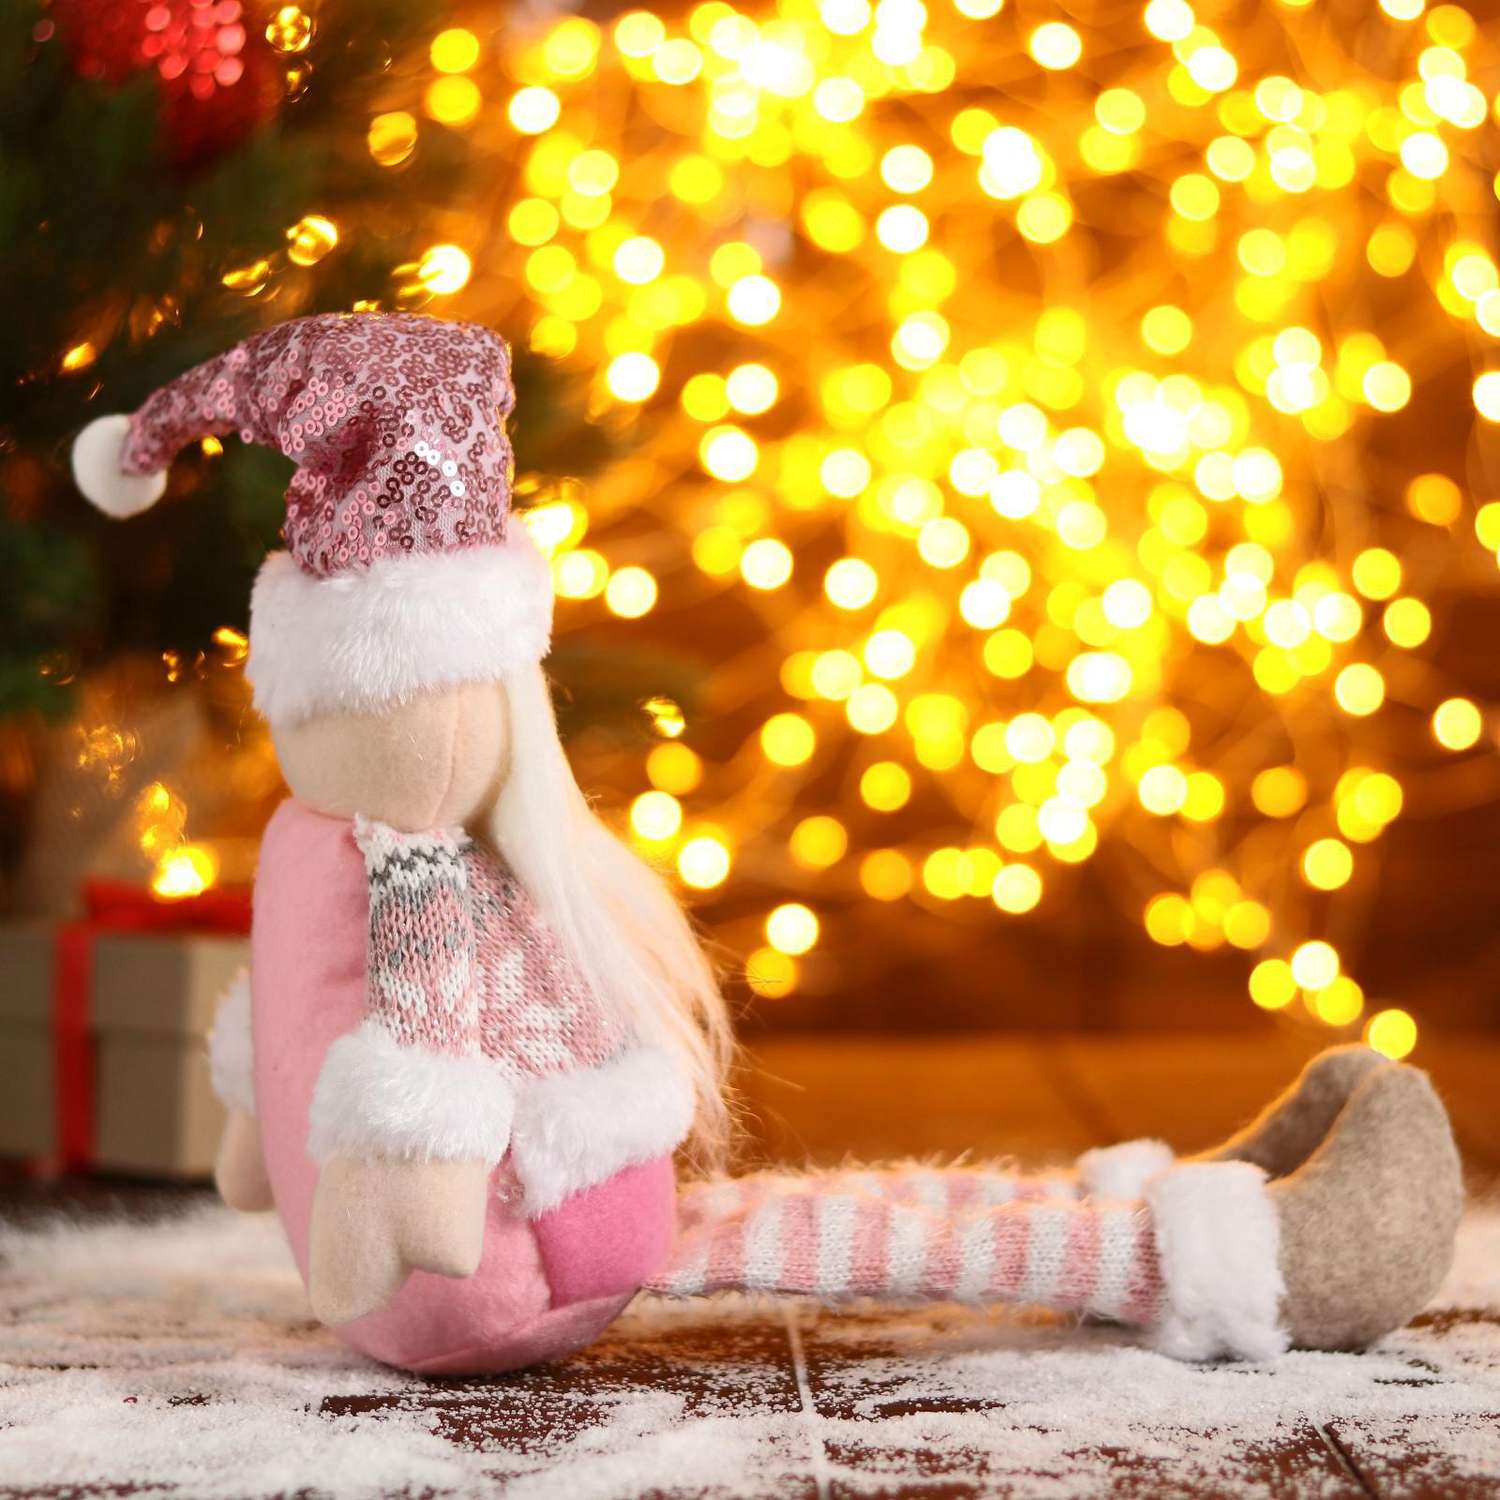 Мягкая игрушка Зимнее волшебство «Дед Мороз в розой шапочке-длинные ножки» 11х37см бело-розовый - фото 4